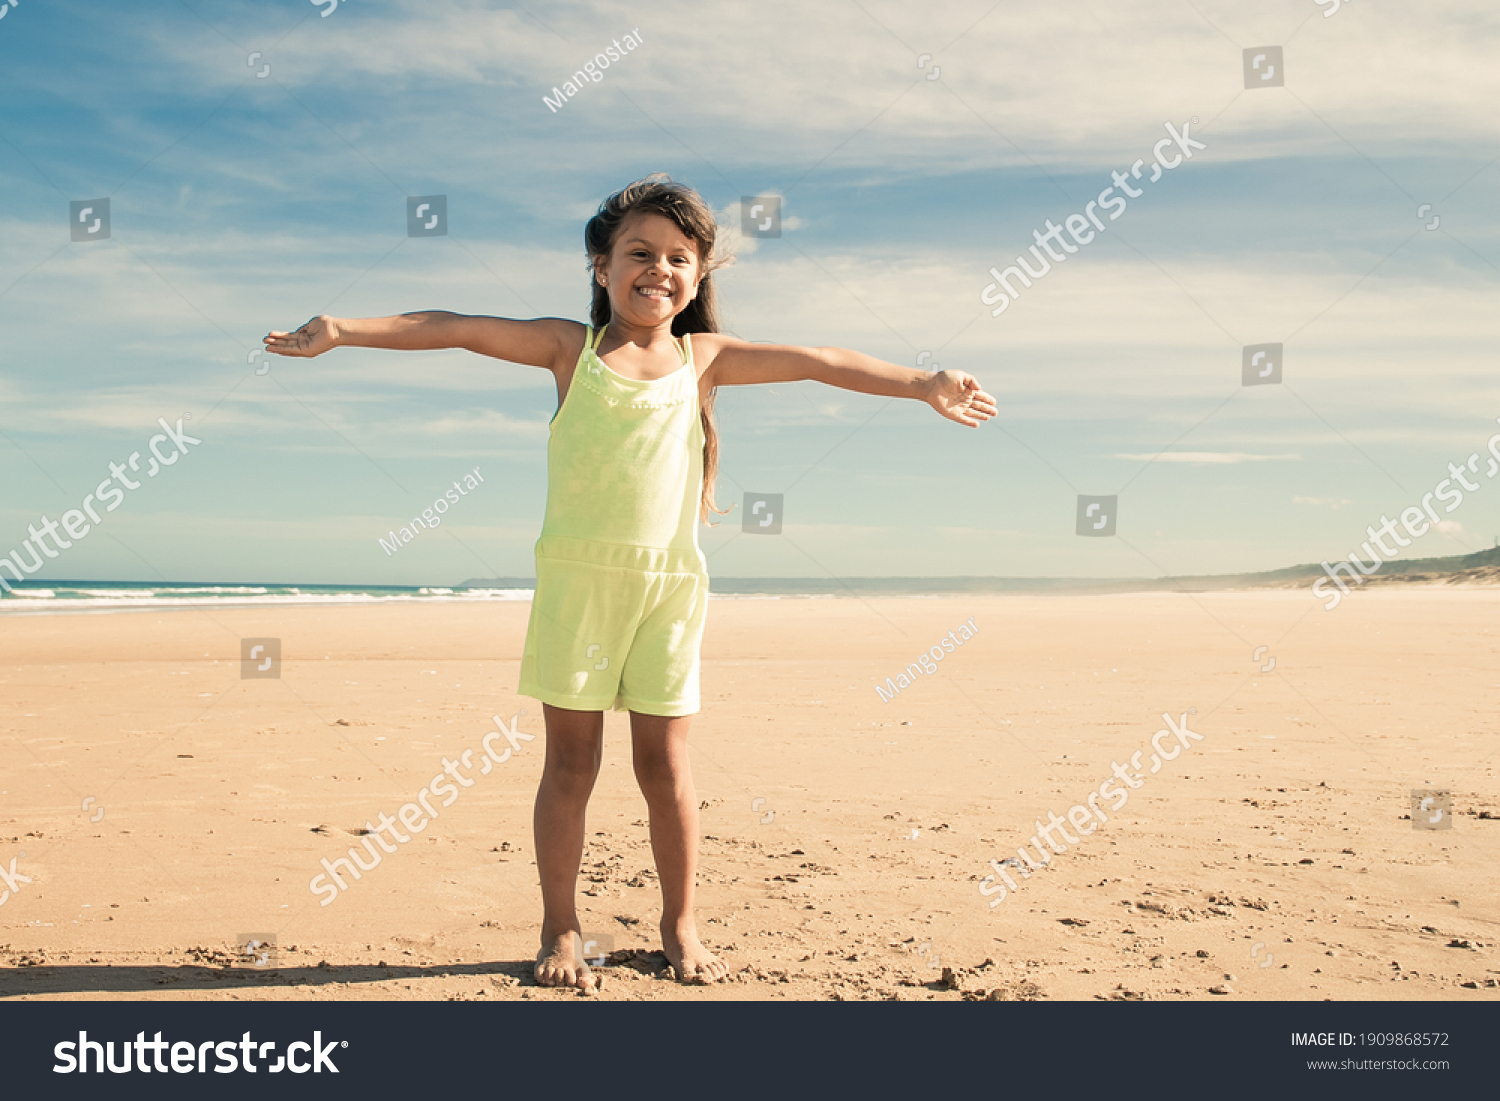 Beach Girls Pics